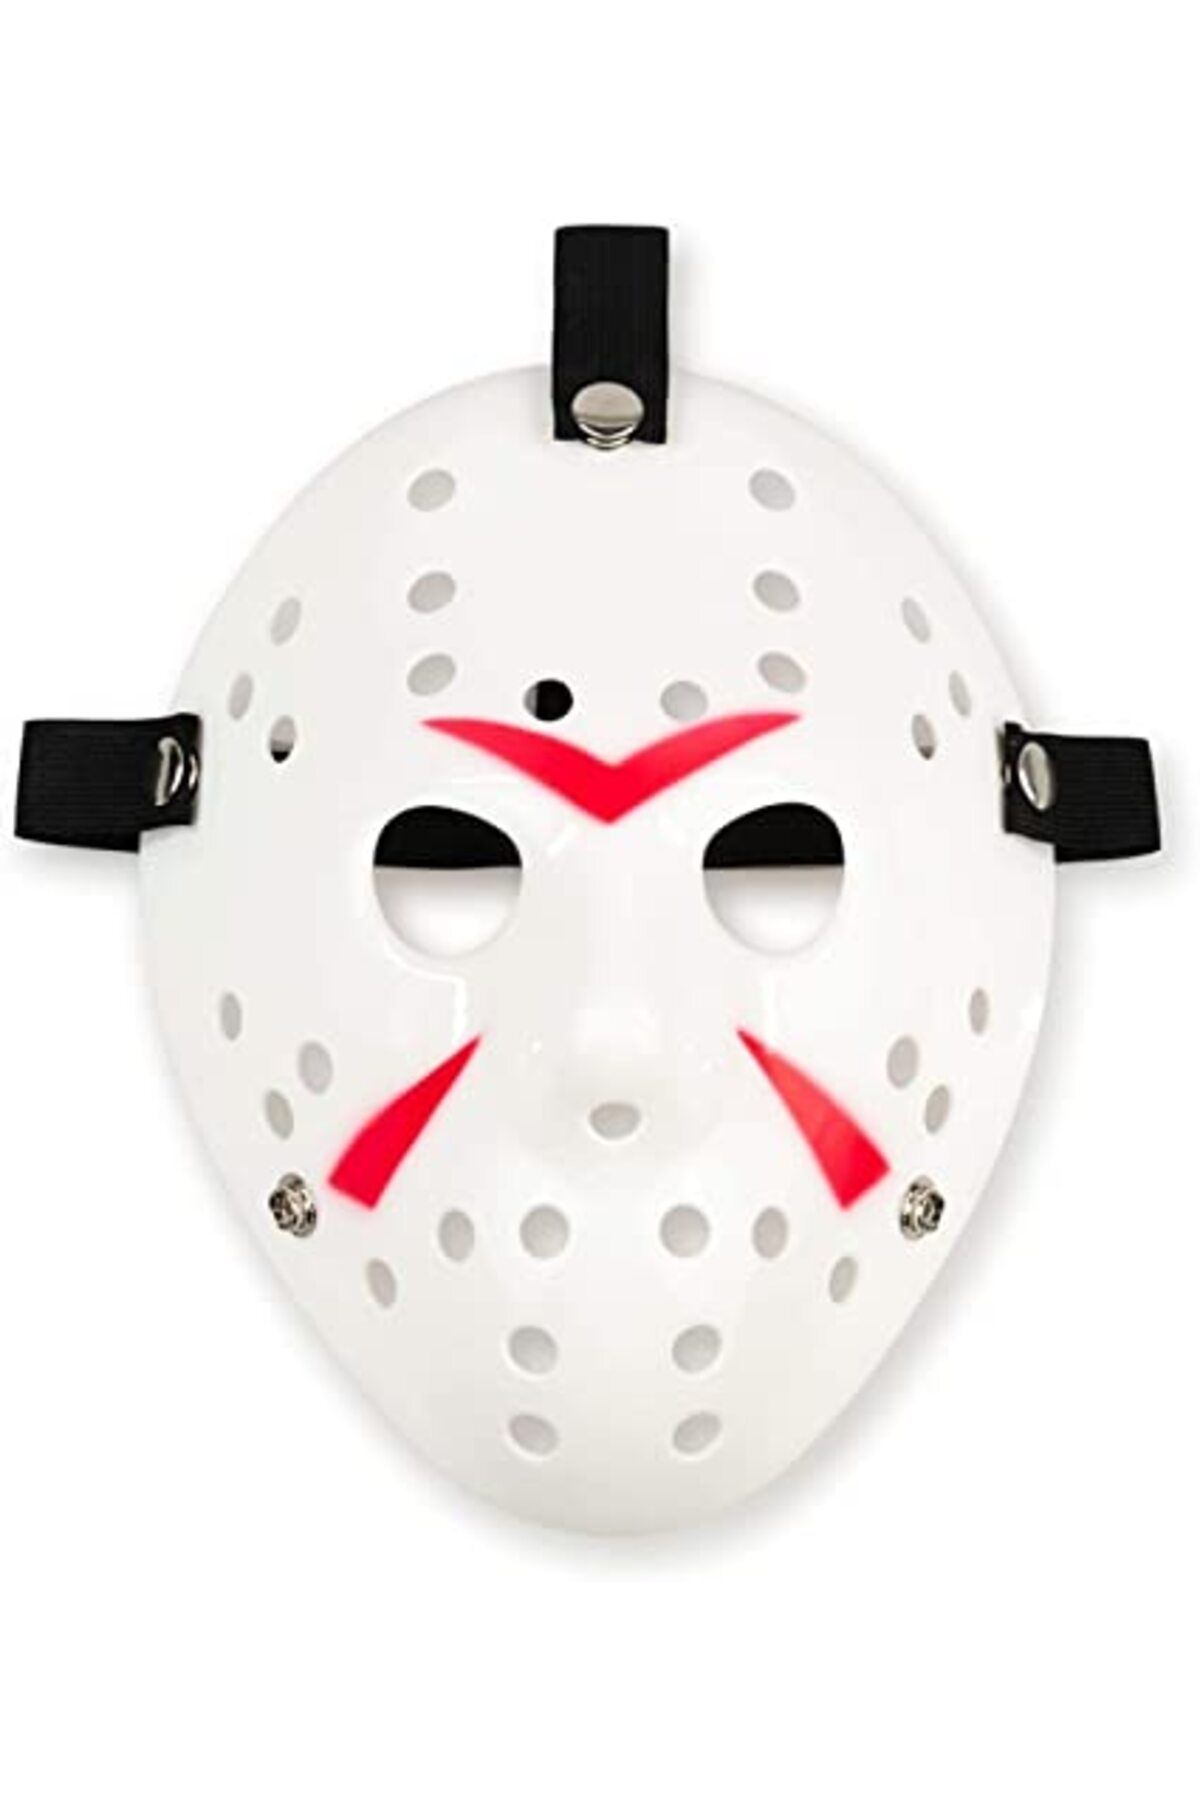 Genel Markalar CLZ192 Beyaz Renk Kırmızı Çizgili Tam Yüz Hokey Jason Maskesi Hannibal Maskesi (4172)